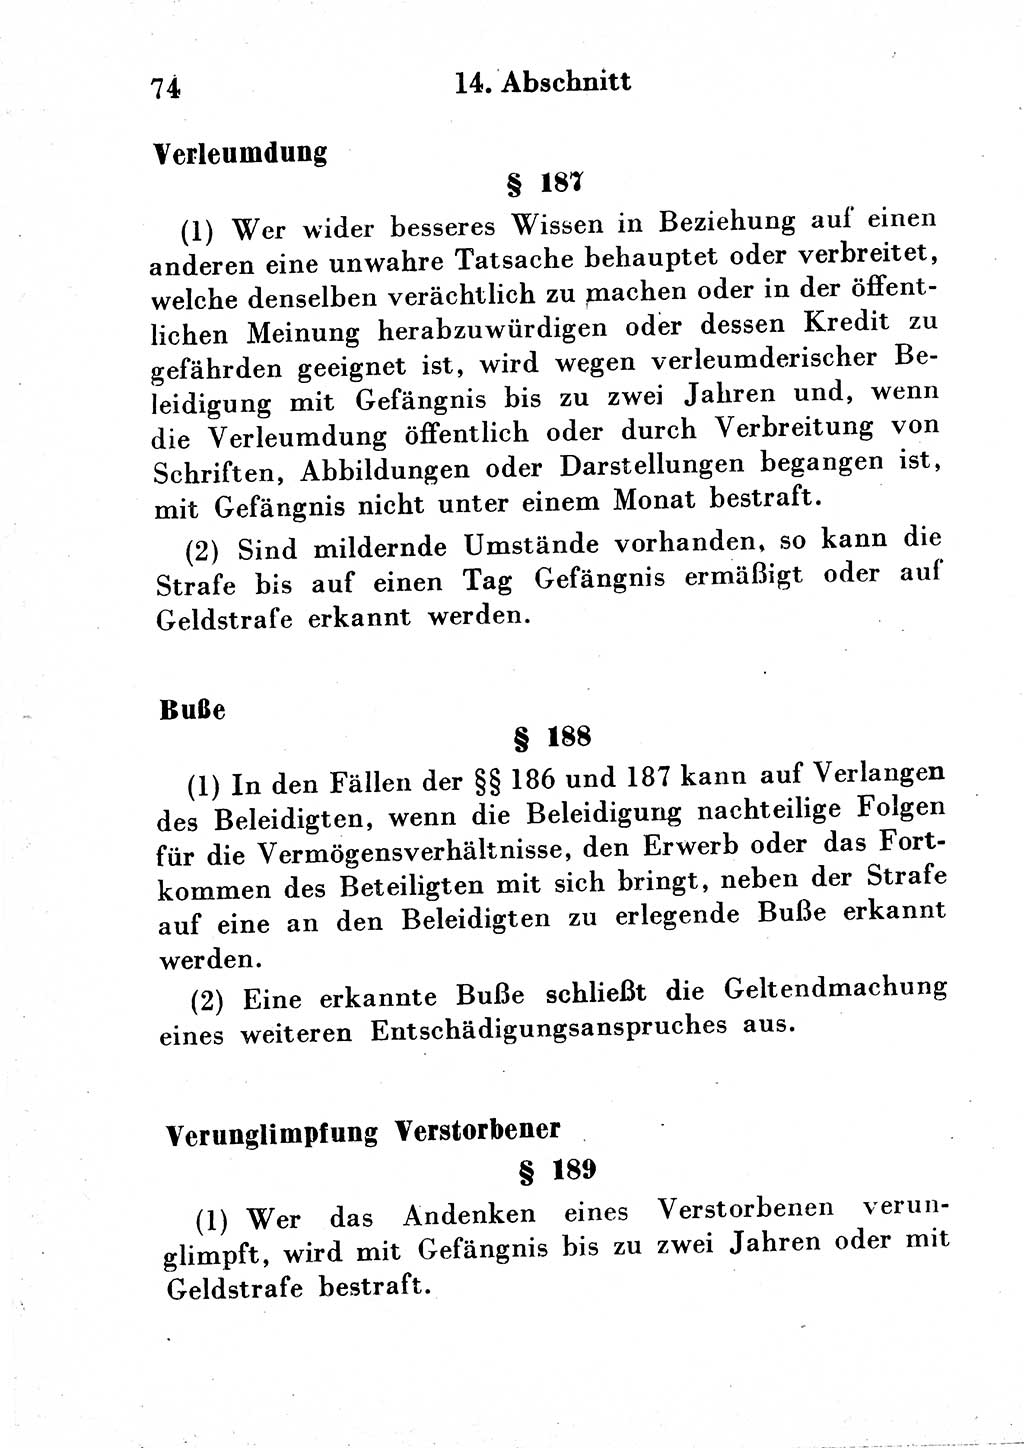 Strafgesetzbuch (StGB) und andere Strafgesetze [Deutsche Demokratische Republik (DDR)] 1954, Seite 74 (StGB Strafges. DDR 1954, S. 74)